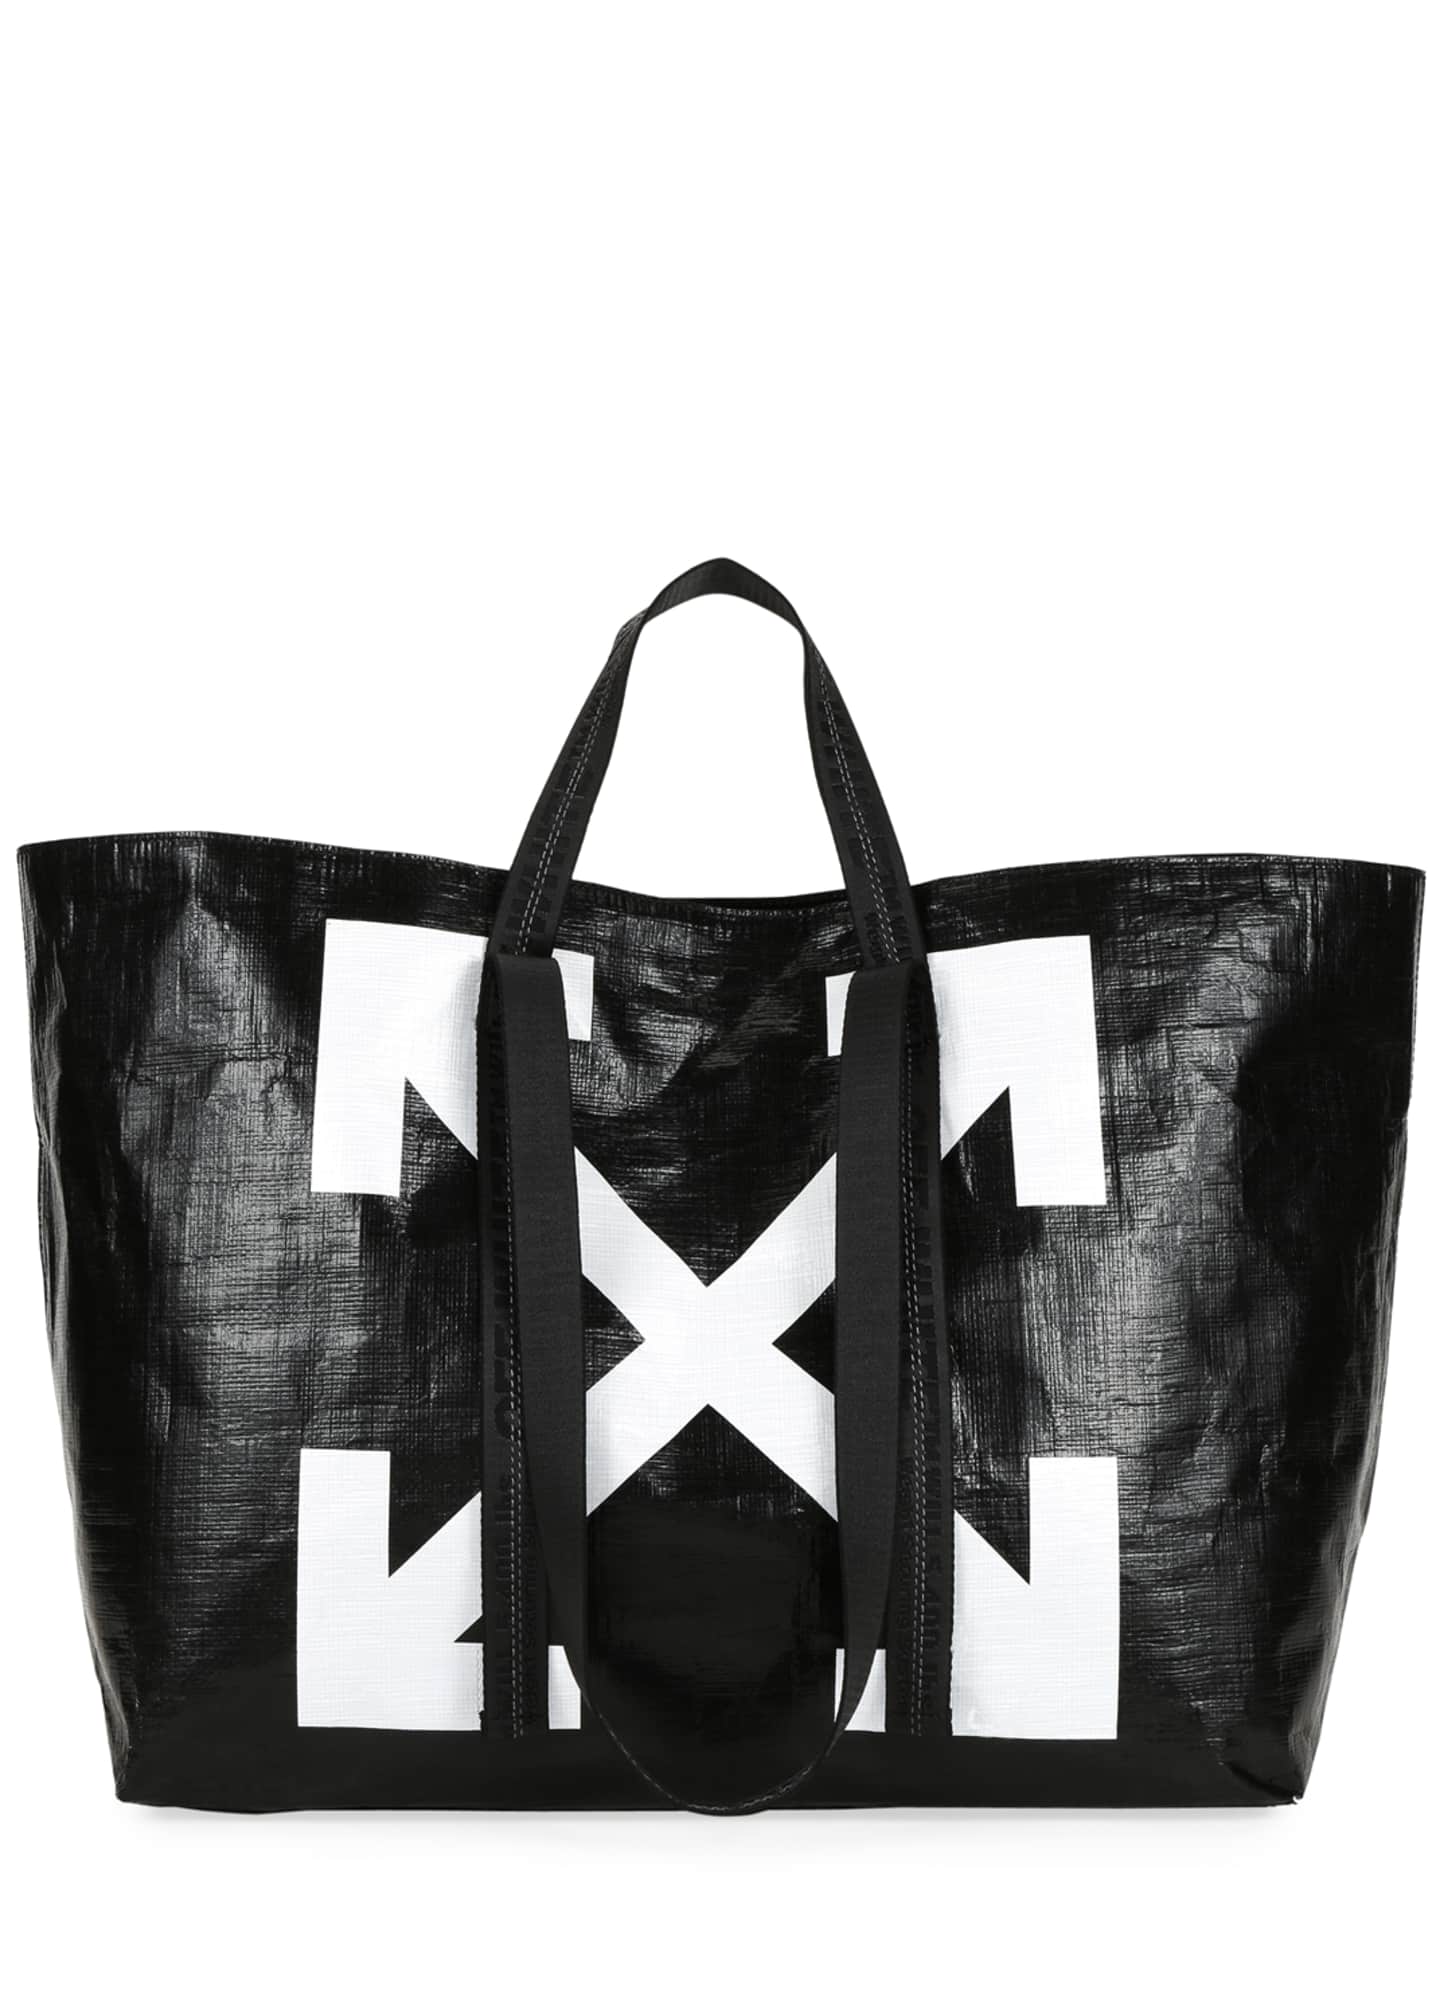 Hayward Suede Hayward Shopper Tote Bag, Black